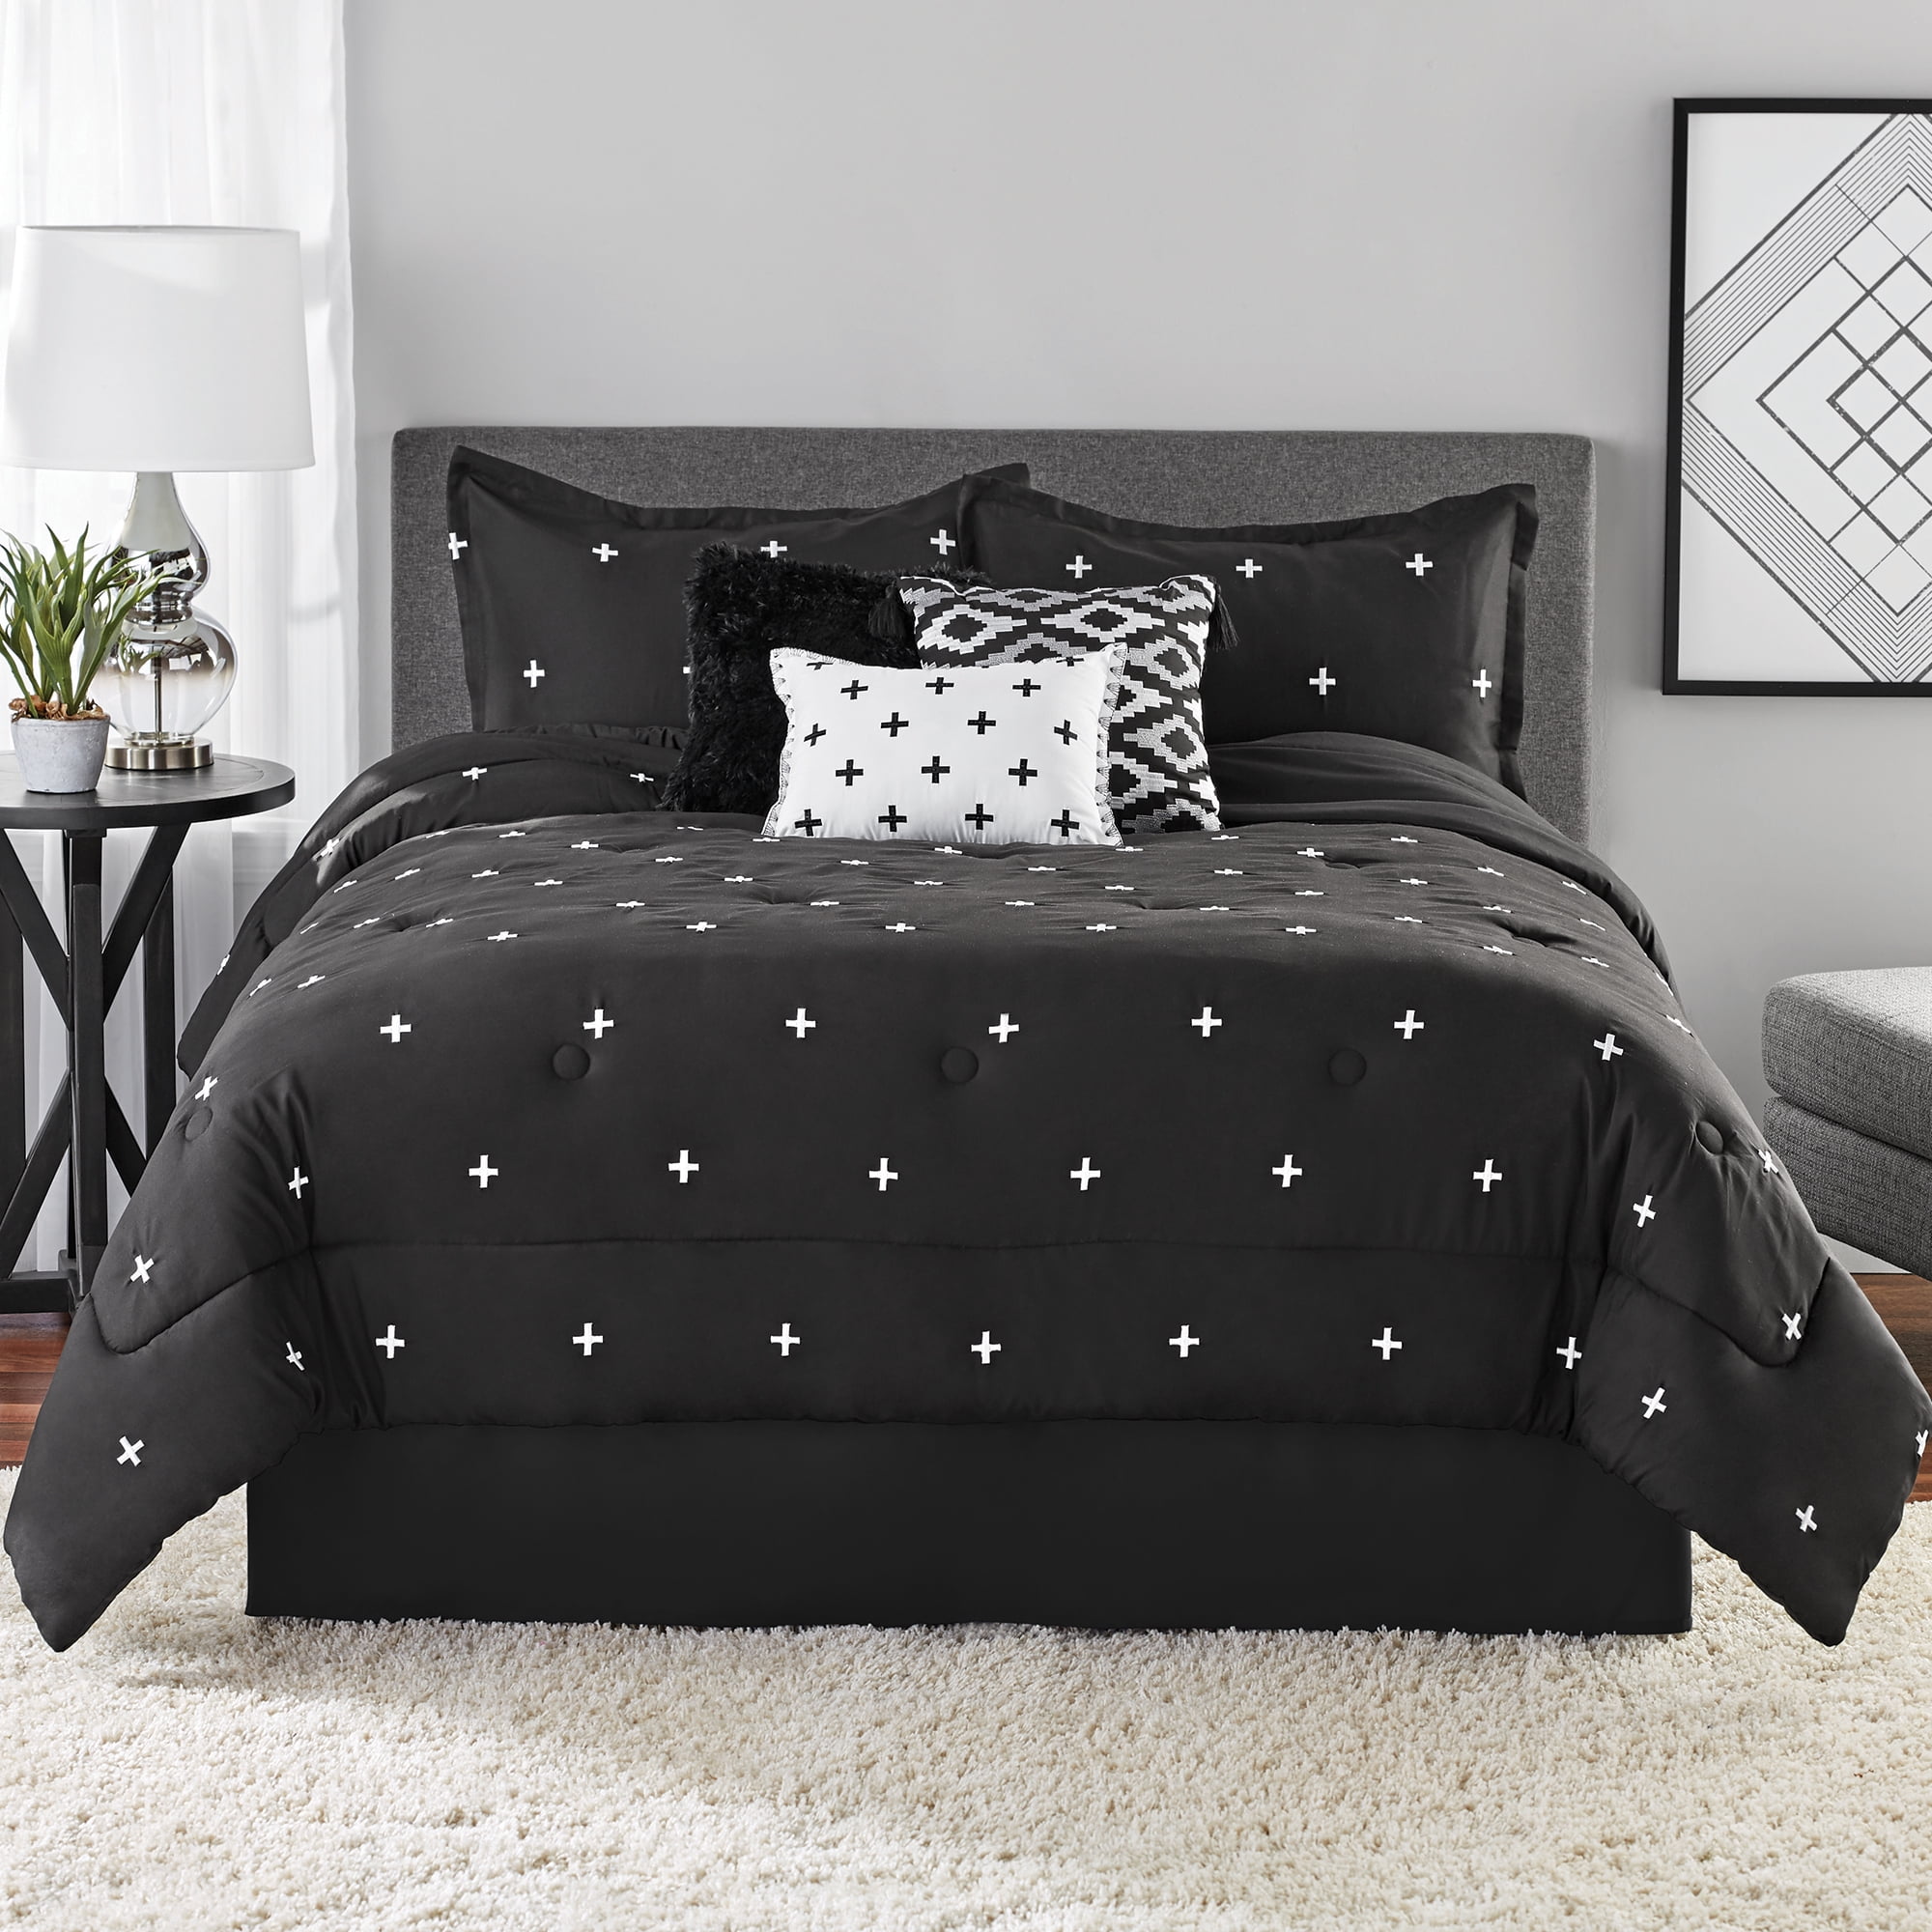 Black Embroidered Bedding Set